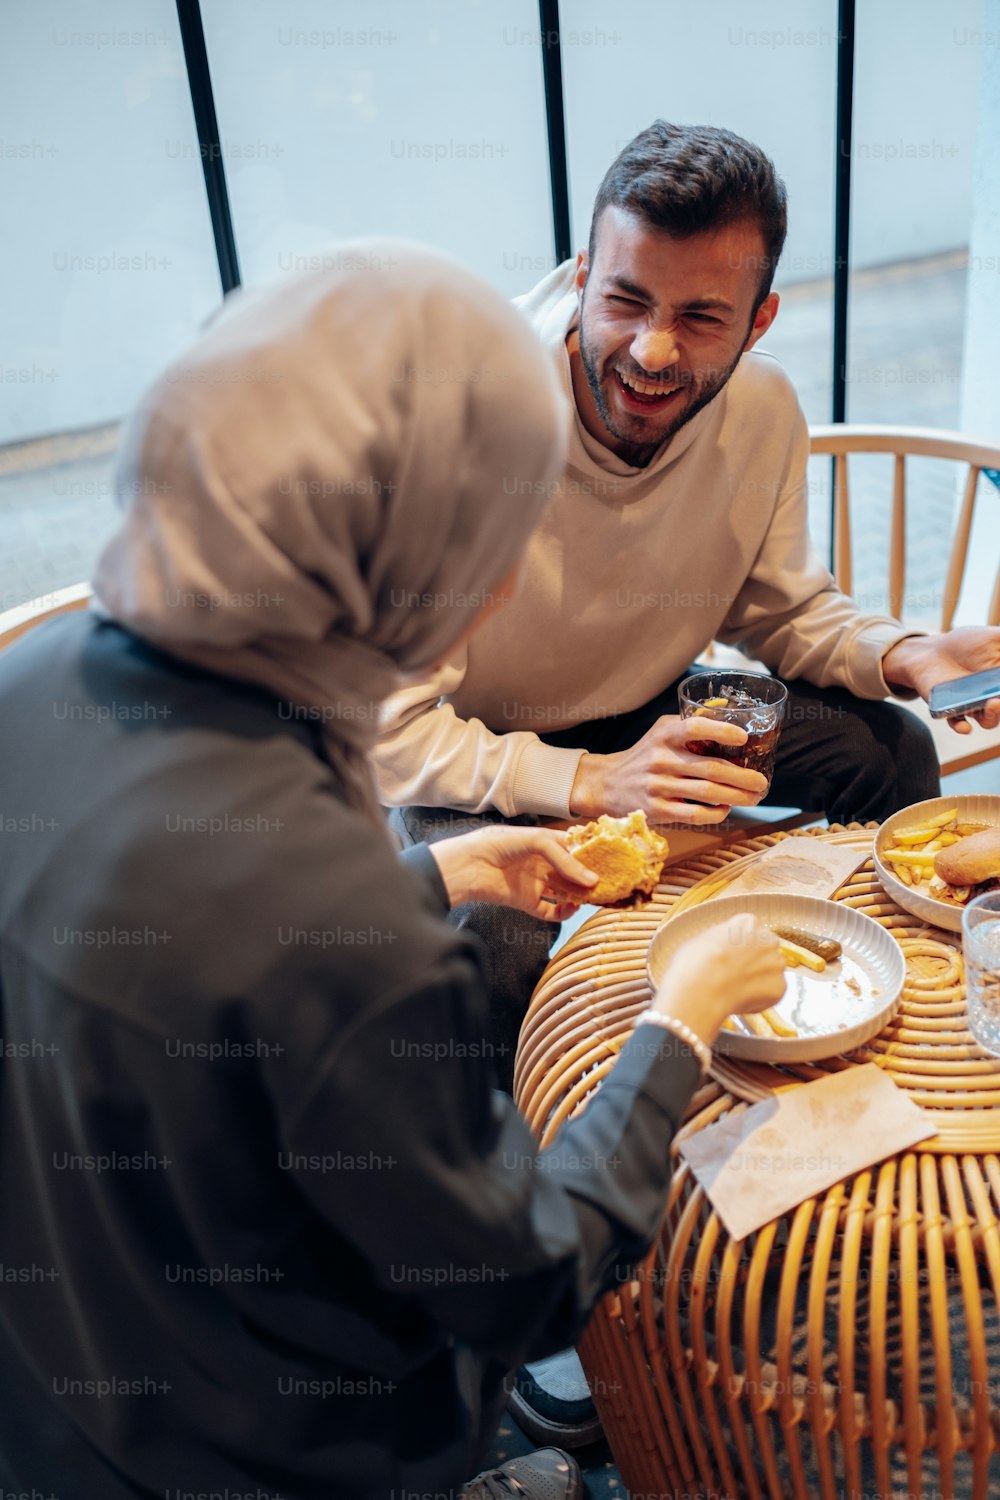 Un uomo e una donna seduti a un tavolo che condividono un pasto